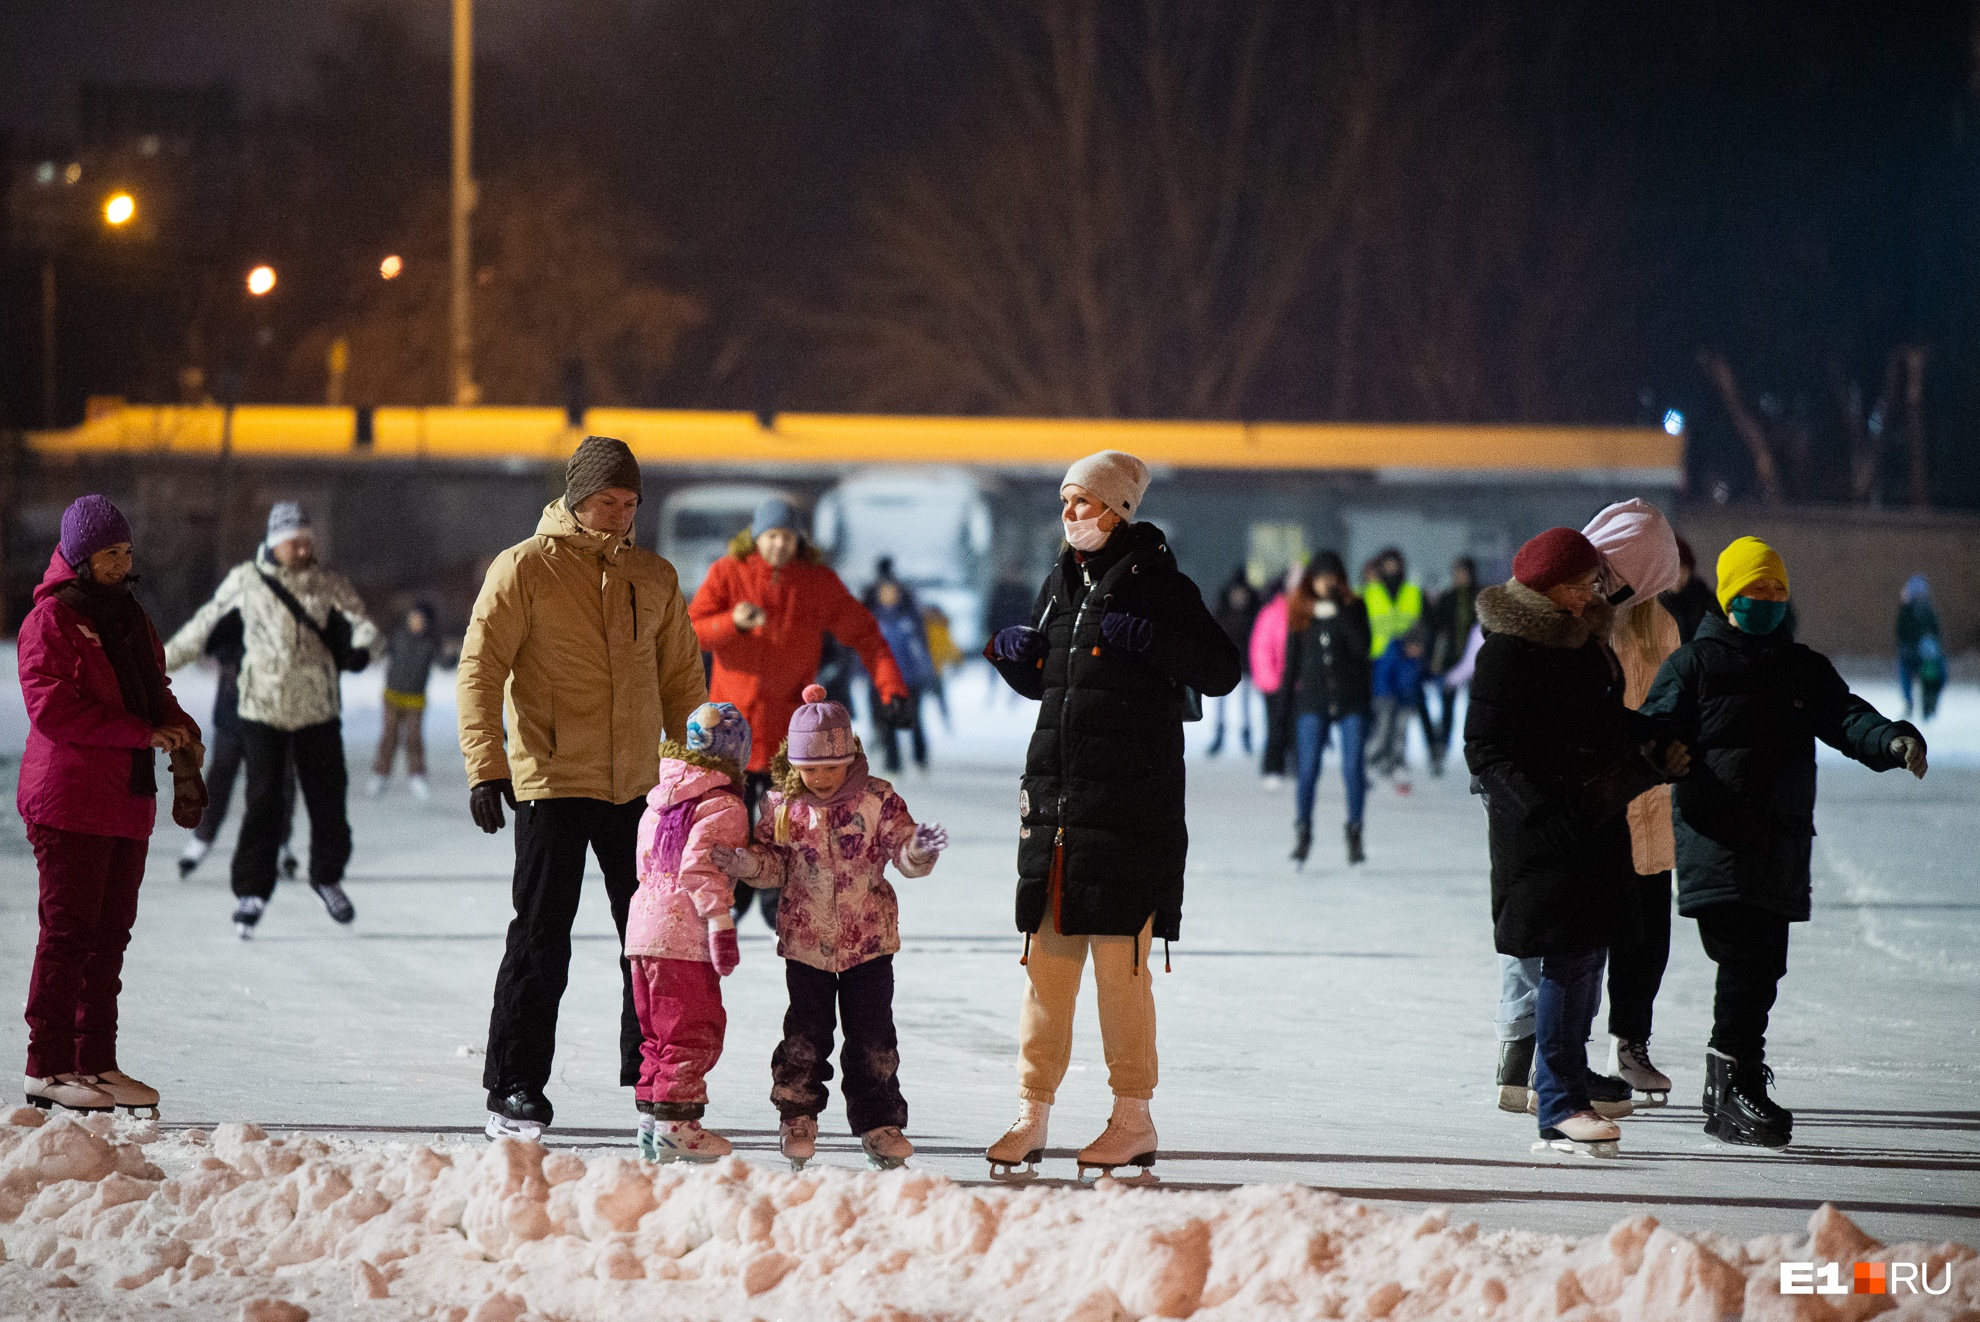 Все на лед! Показываем, как стартовали массовые катания на коньках в Екатеринбурге